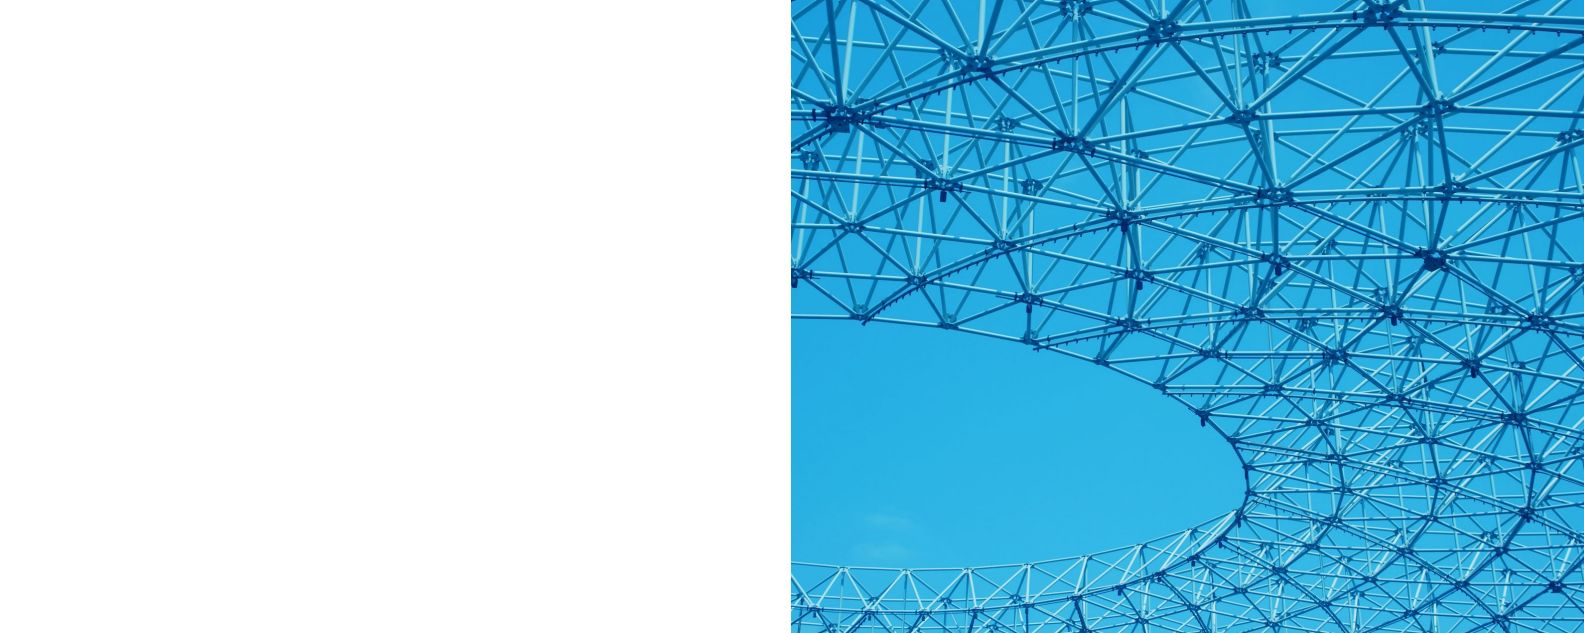 Plano fechado de uma estrutura metálica em espiral, com céu azul em segundo plano